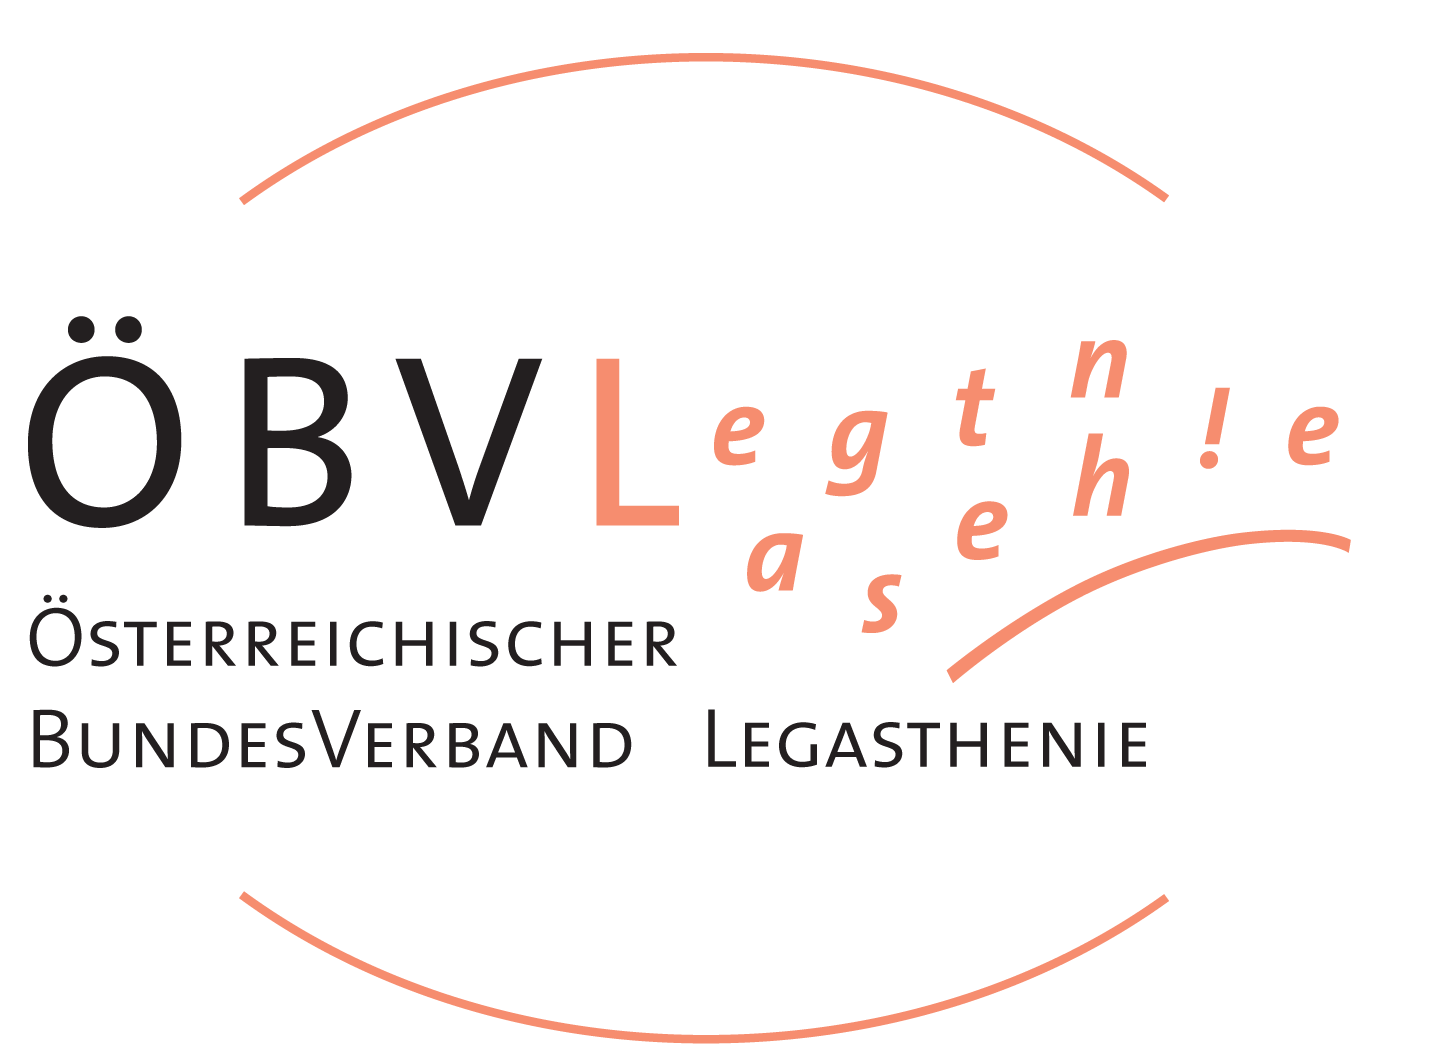 ÖBVL - Österreischicher Bundesverband Legasthenie